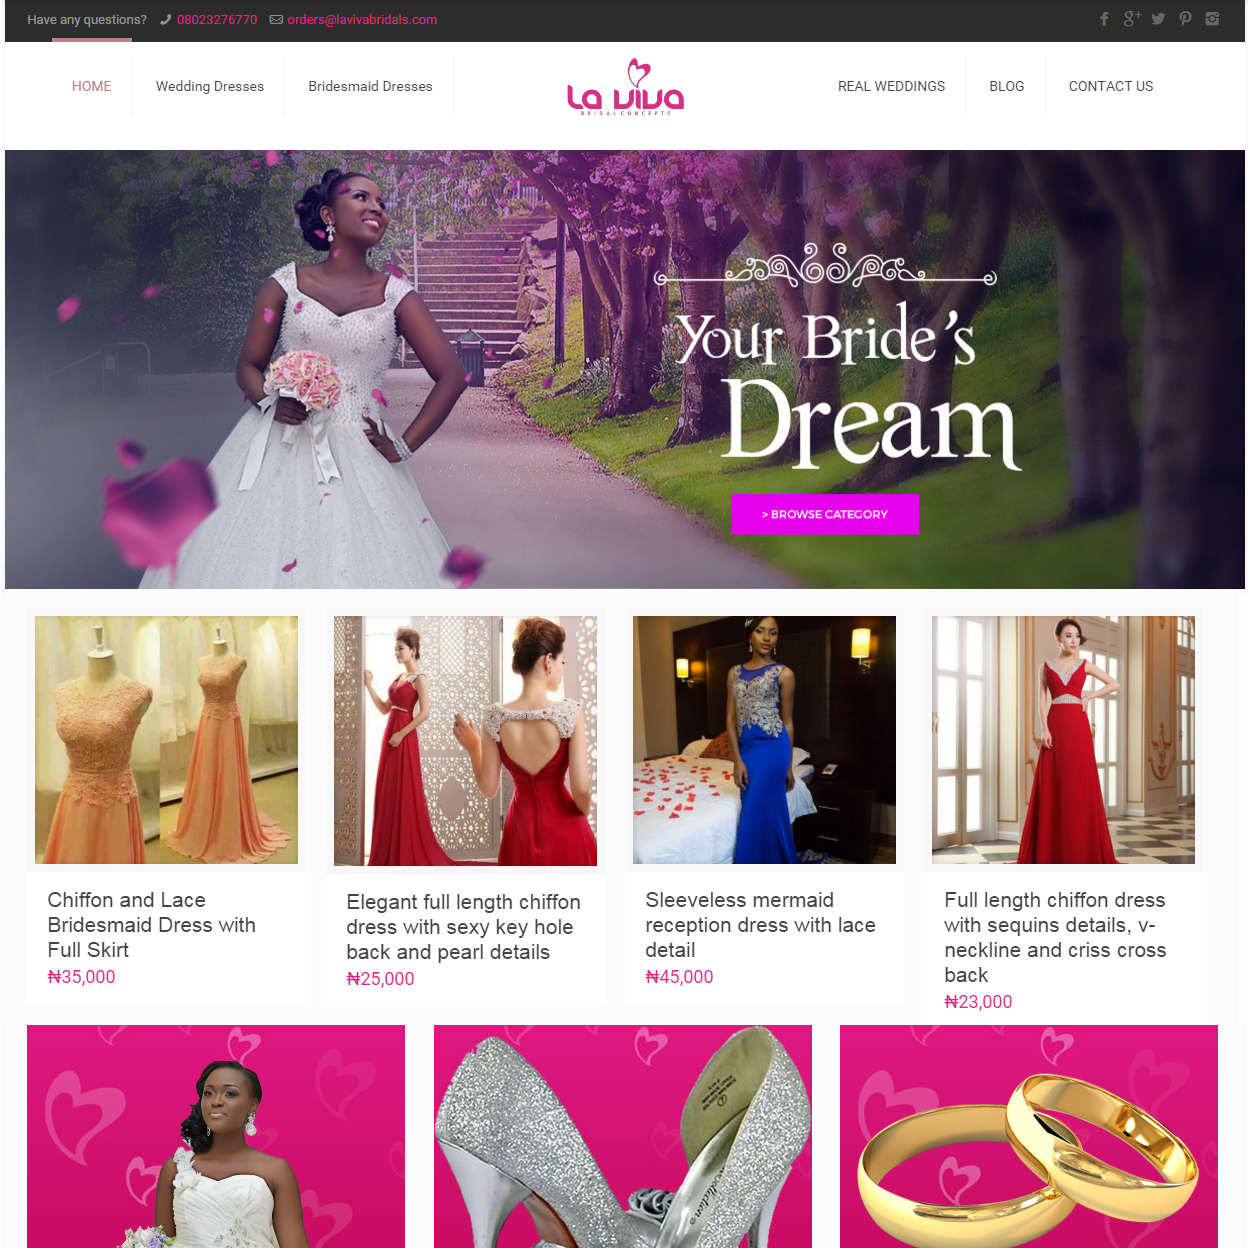 Bridal ears ebsite designer in Lagos nigeria